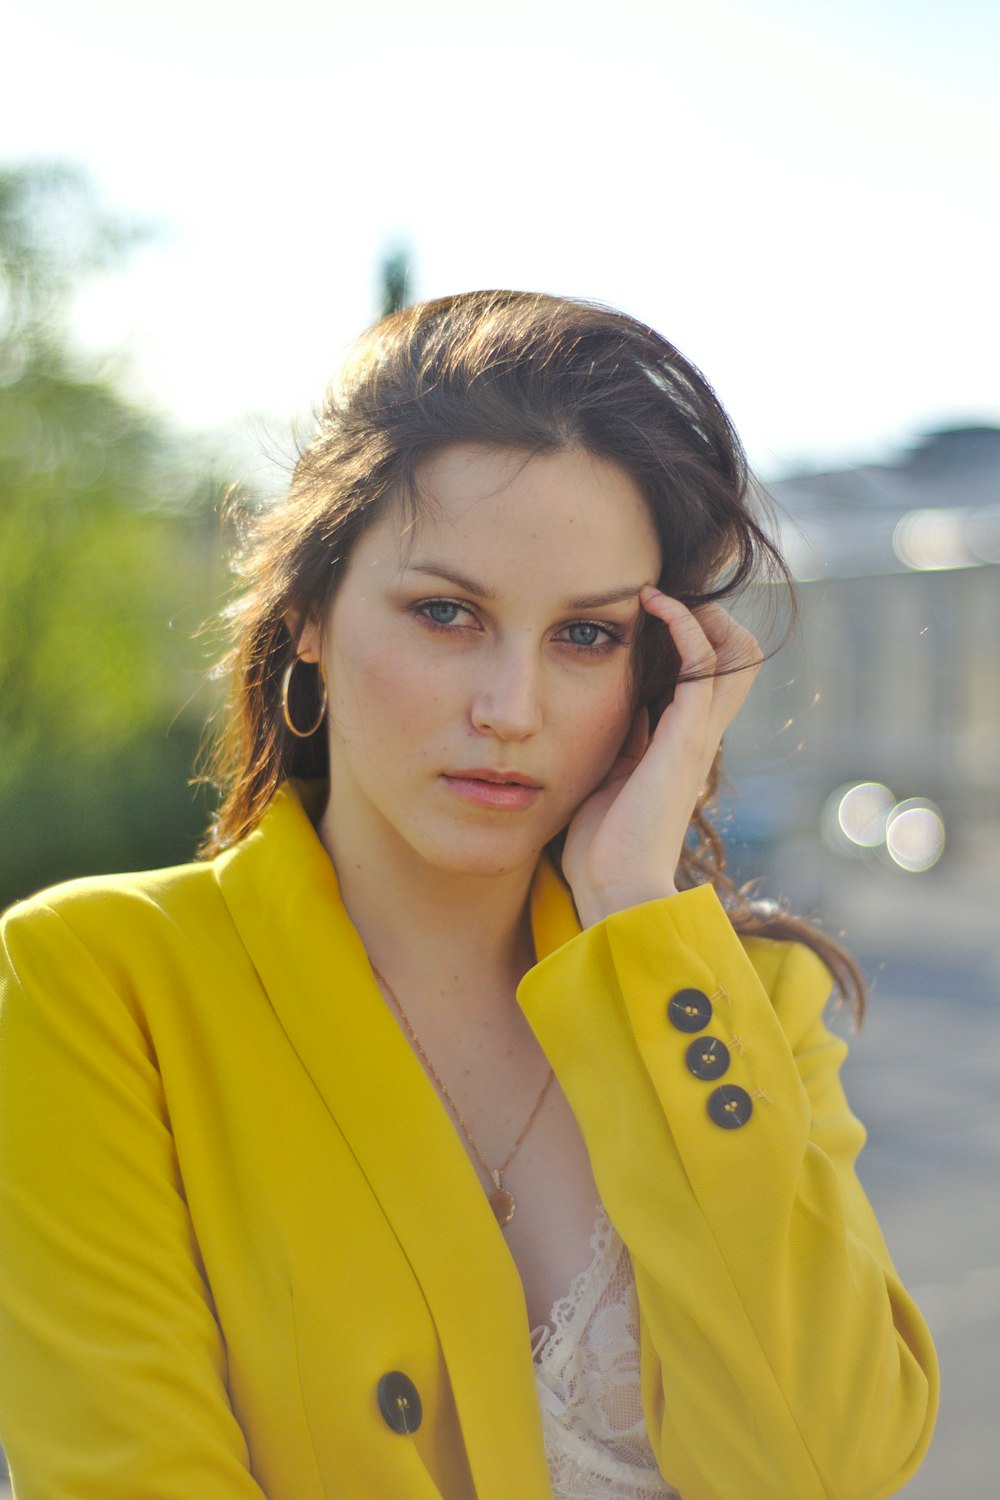 Una mujer con una chaqueta amarilla posa para una foto